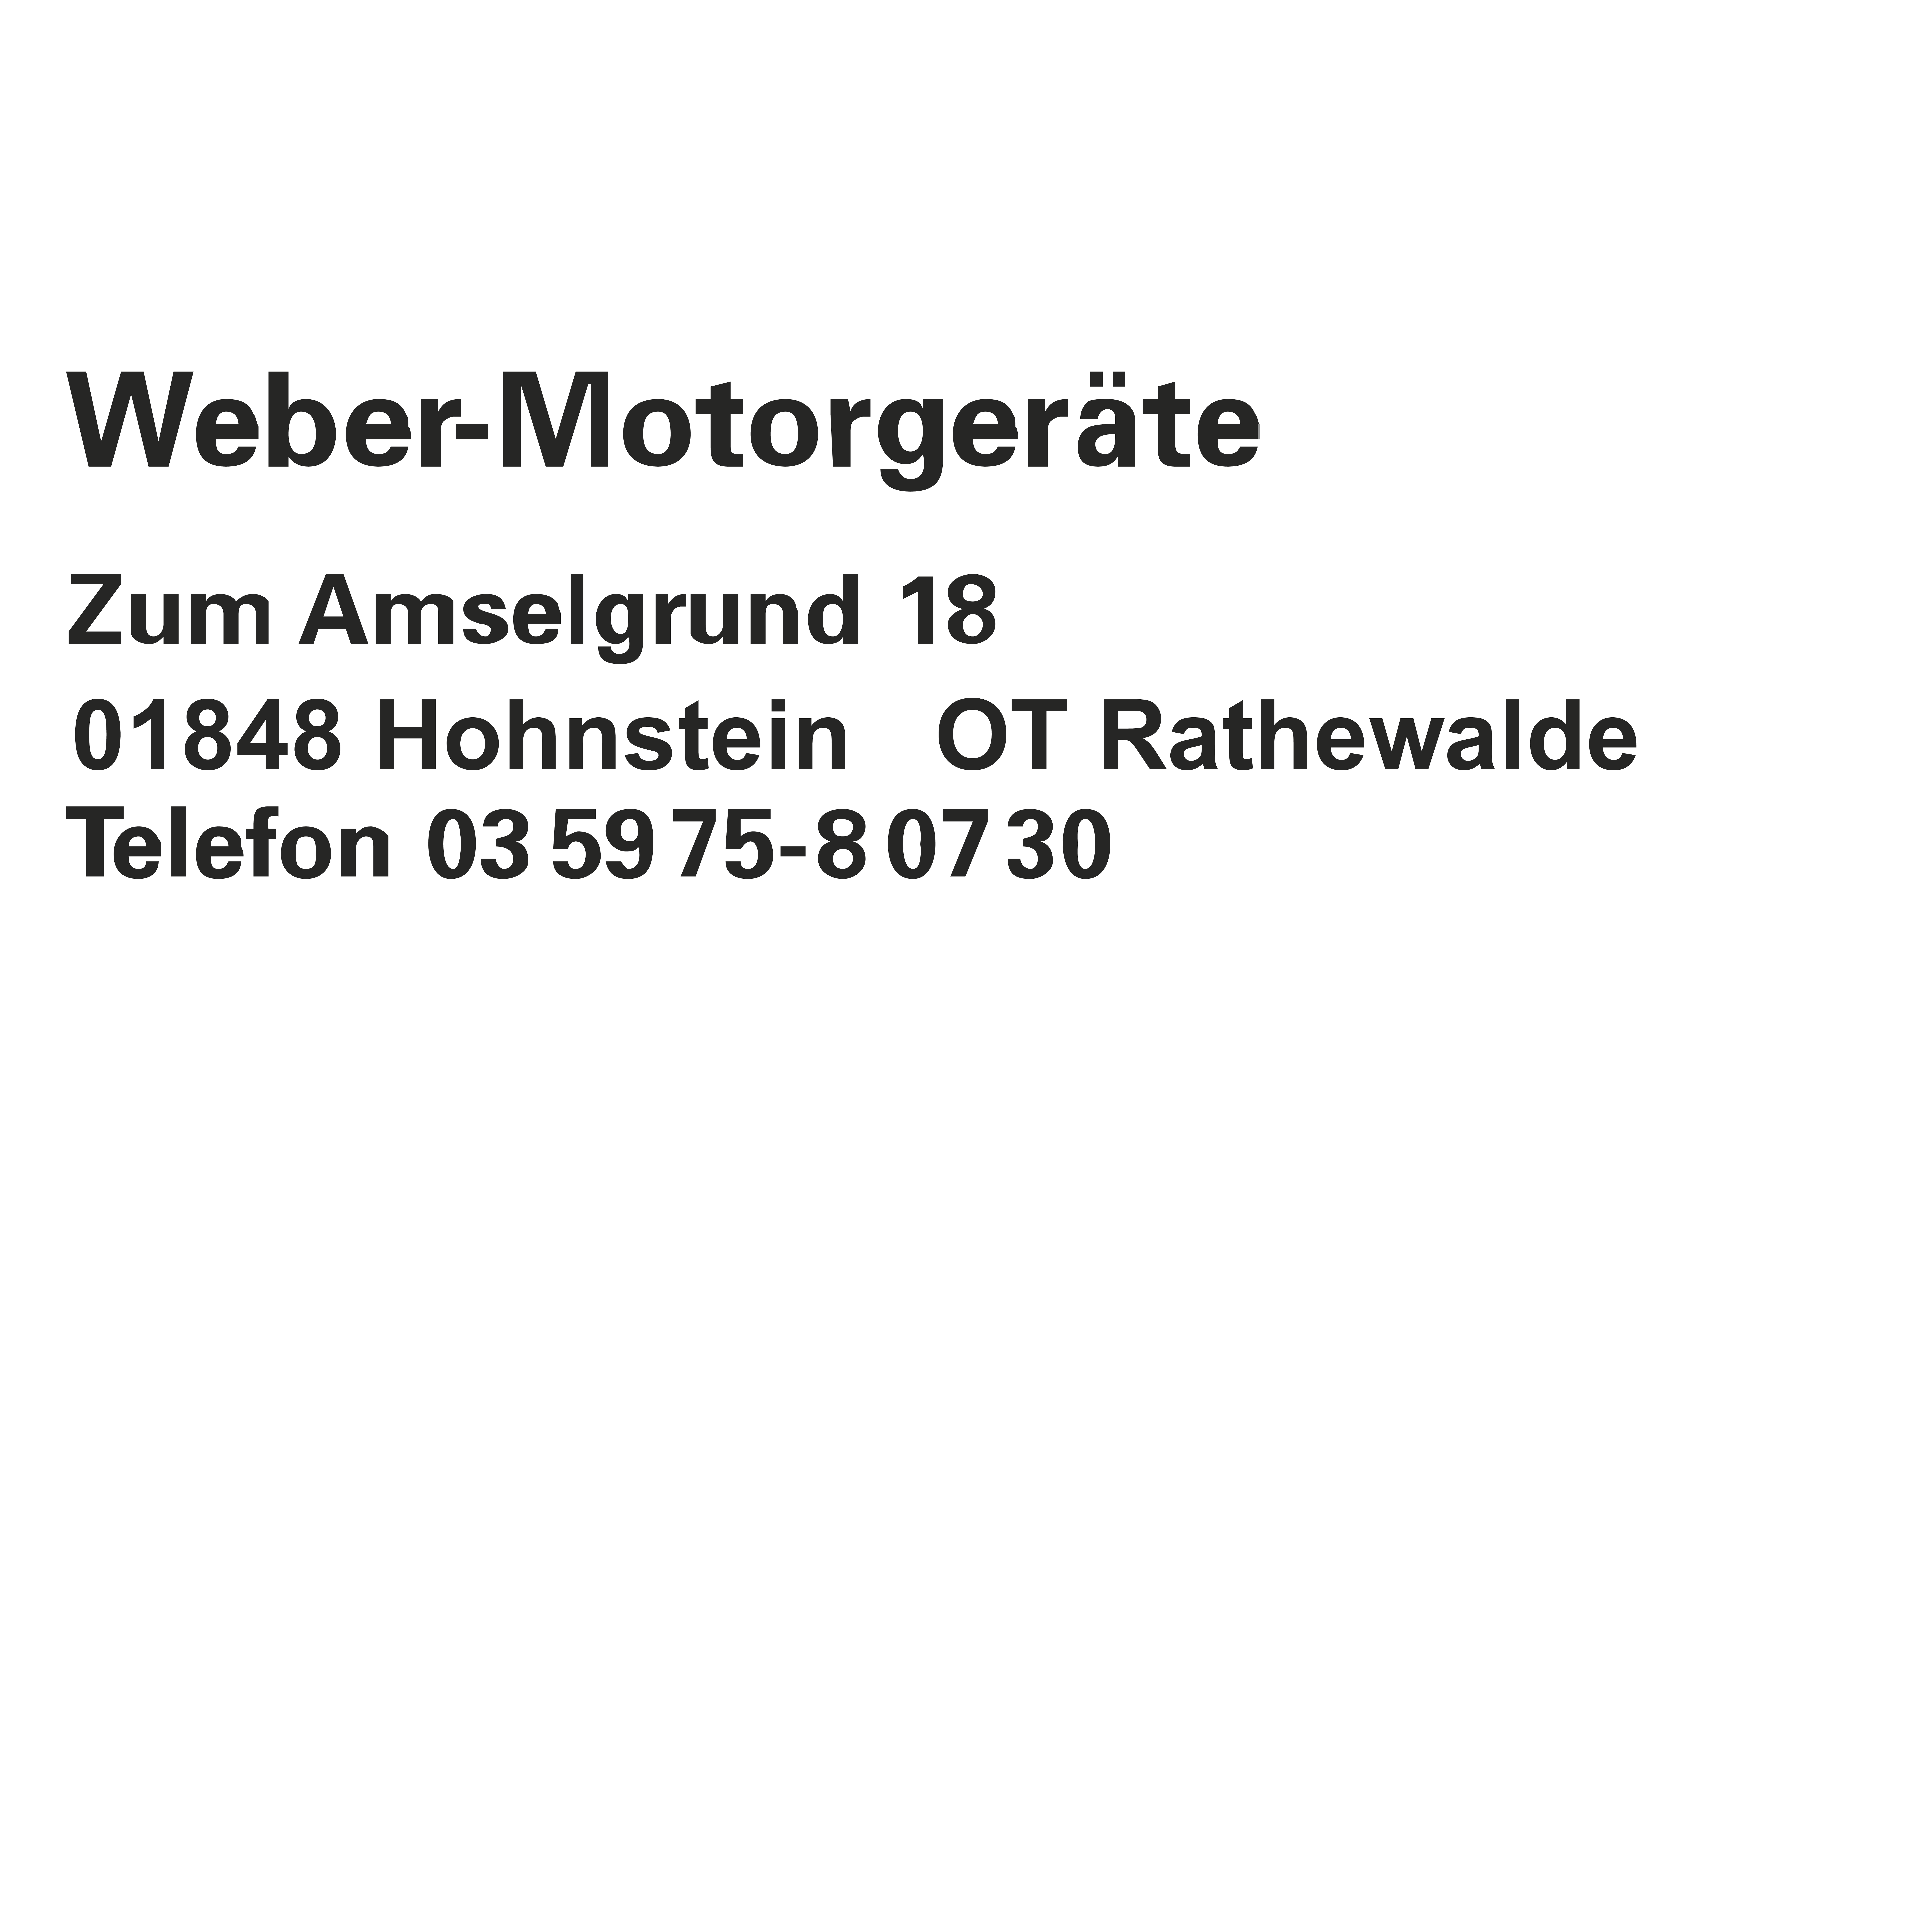 Weber-Motorgeräte in Rathewalde Stadt Hohnstein - Logo